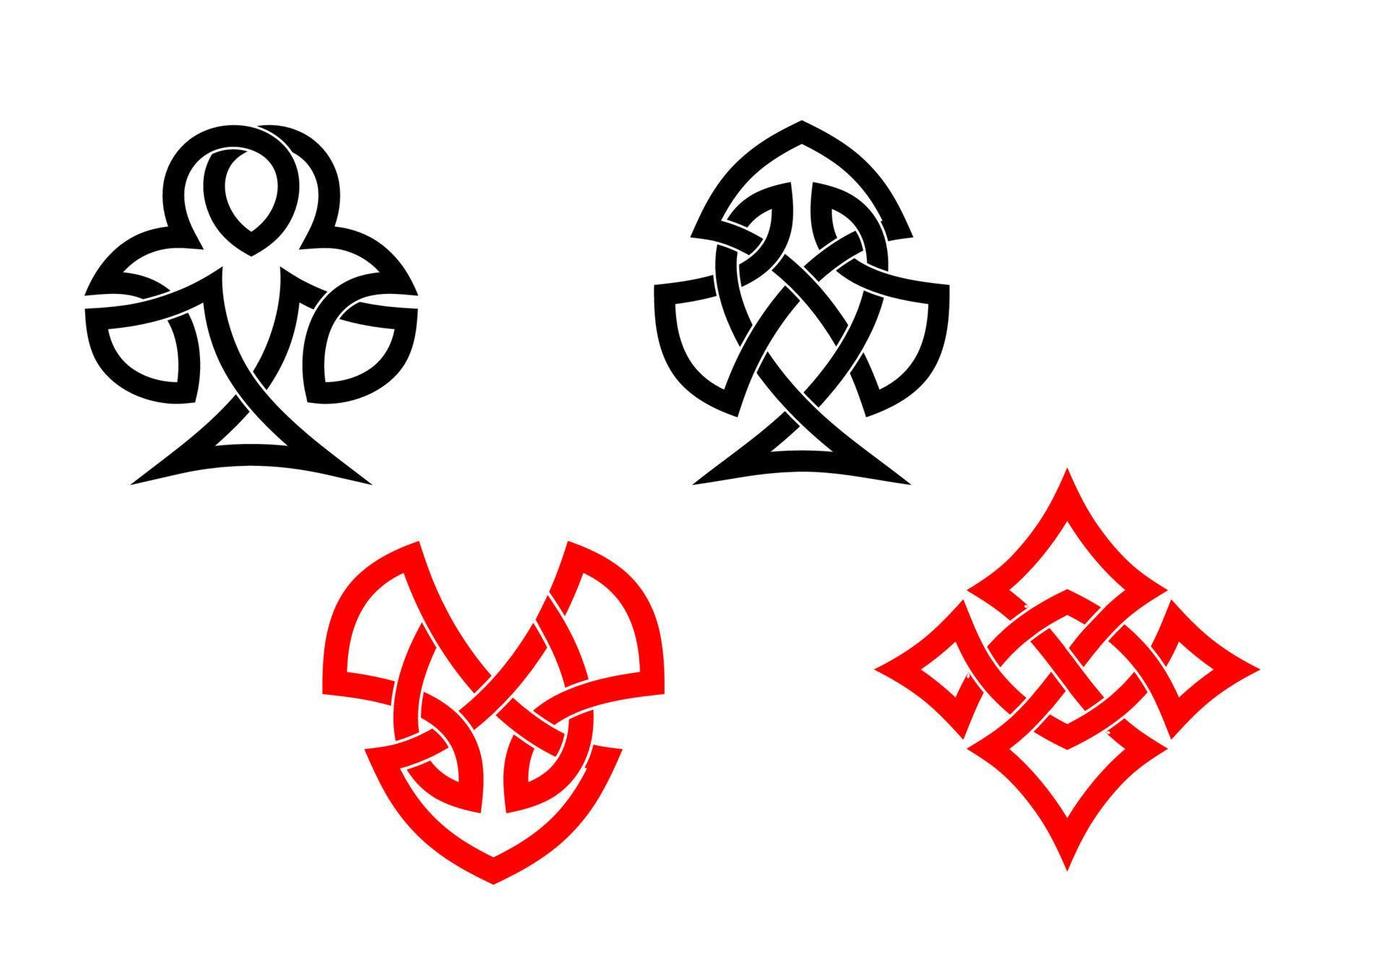 symboles de cartes de poker dans le style celtique vecteur